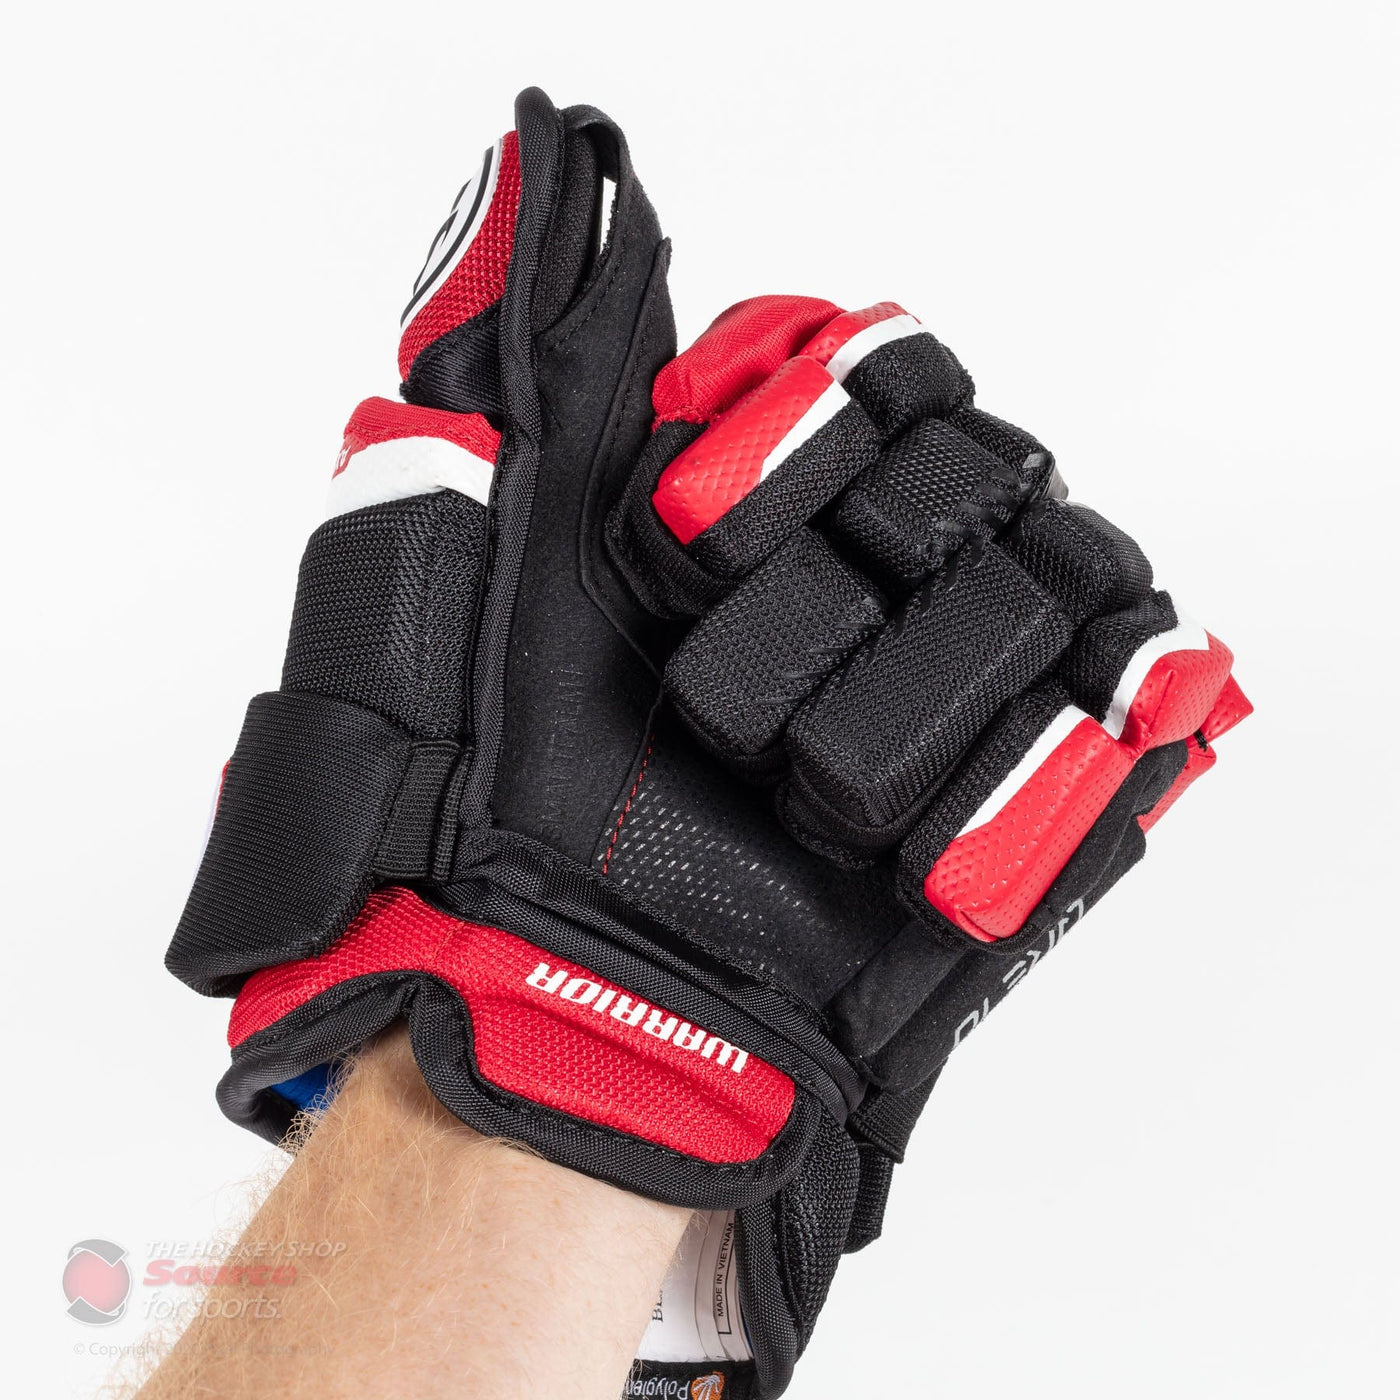 Warrior Covert QRE 10 Junior Hockey Gloves